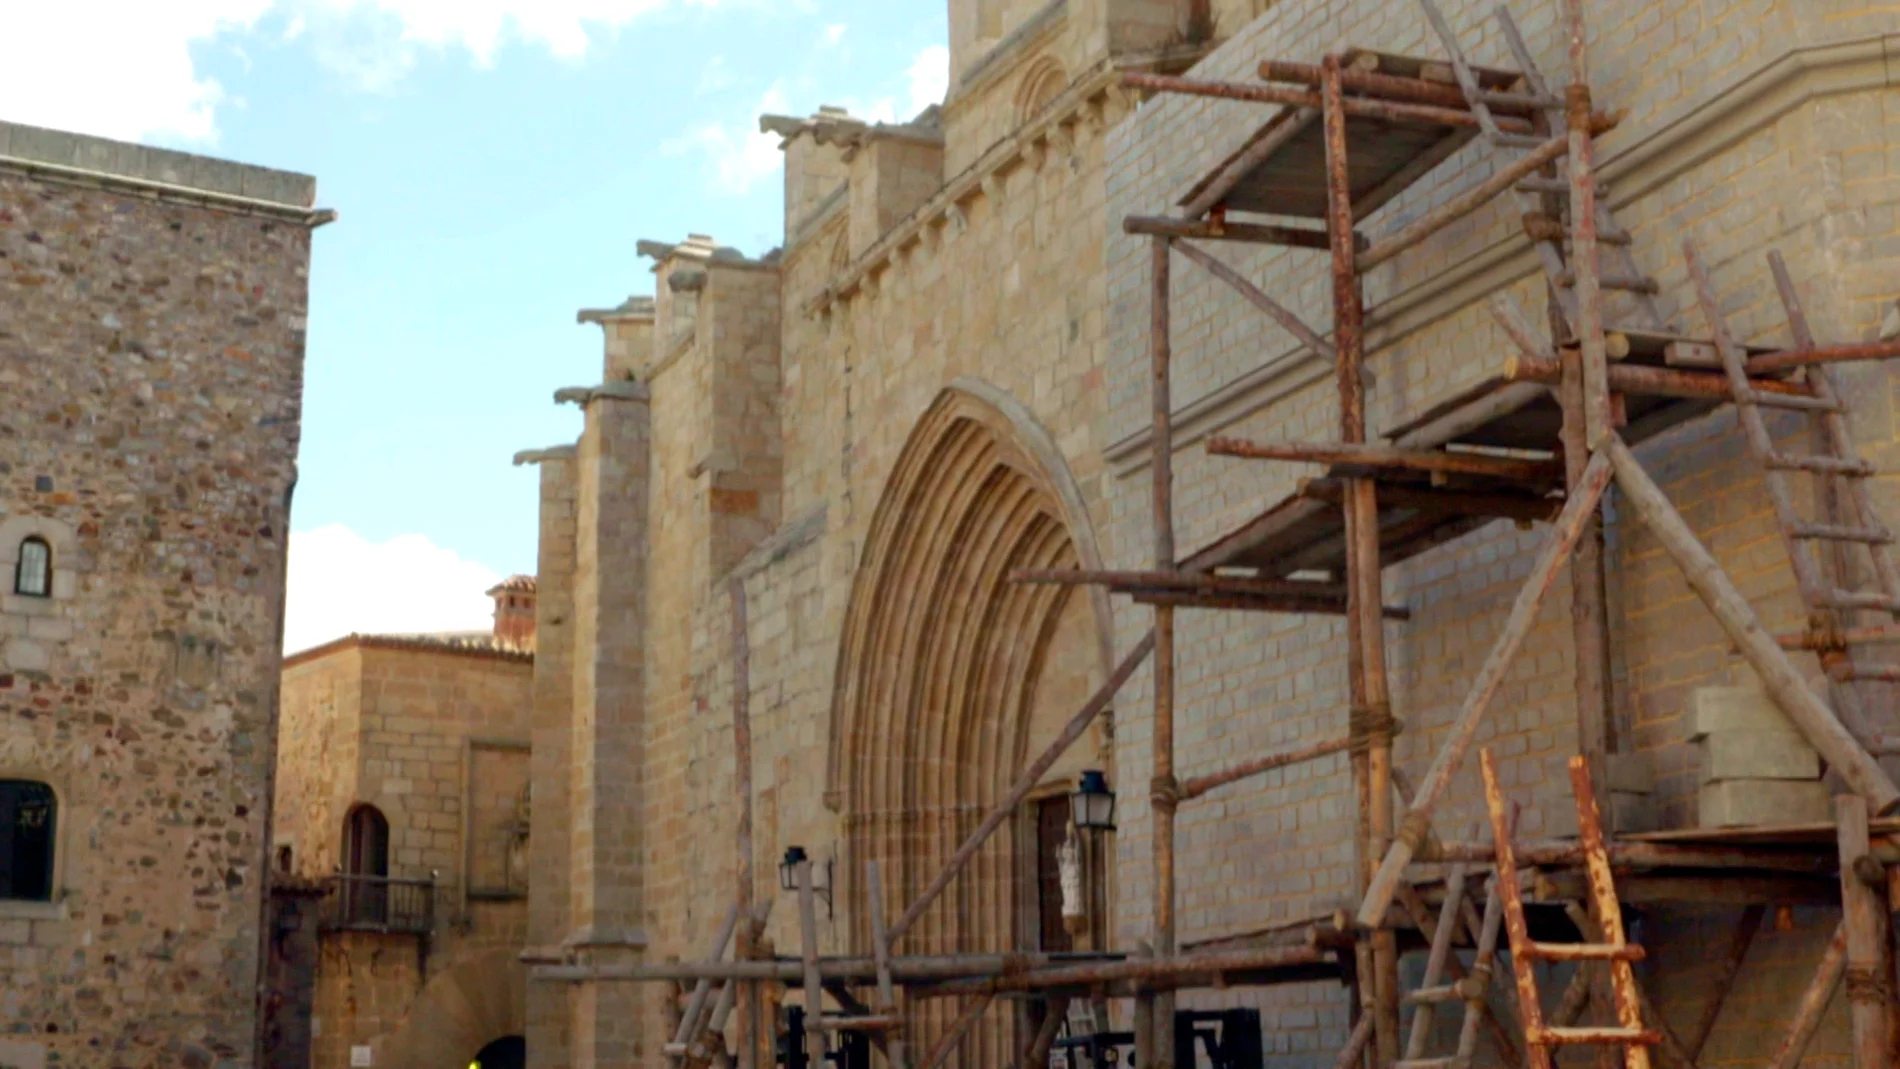 Así se recrea la Basílica de Santa Mª del Mar en Cáceres